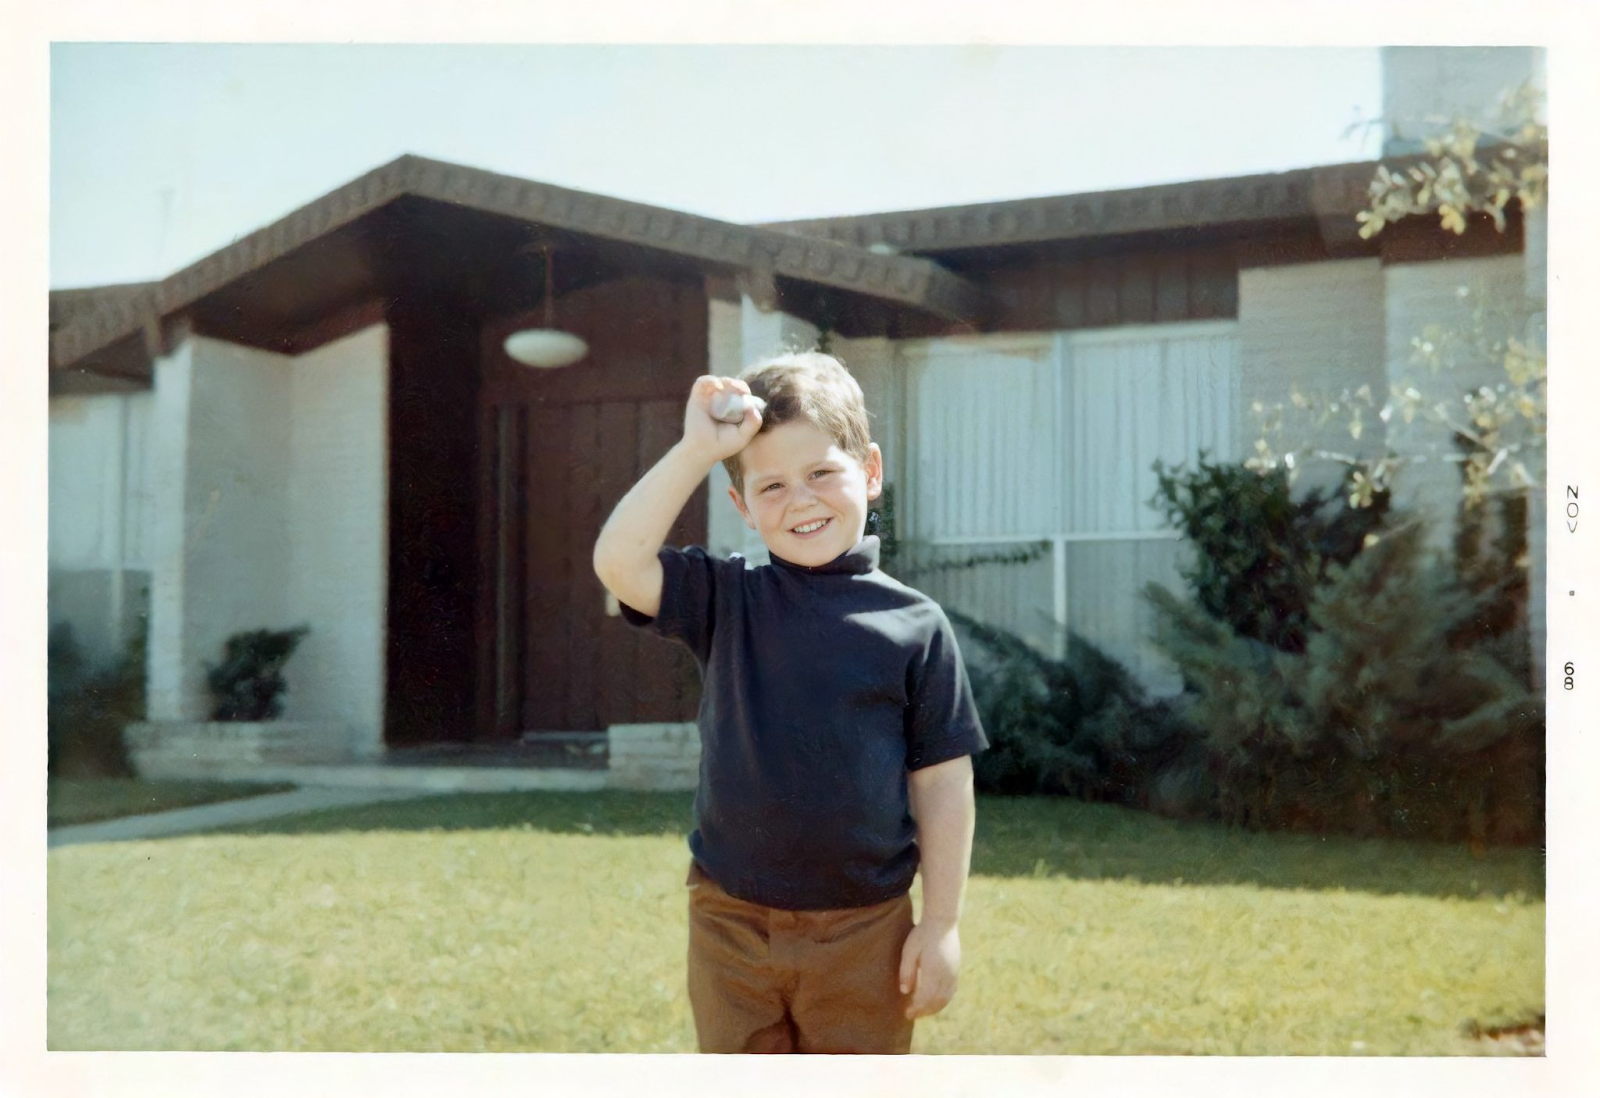 1968 год: трехлетний Майкл Делл на фоне дома в Хьюстоне, штат Техас, где он вырос вместе со своими двумя братьями